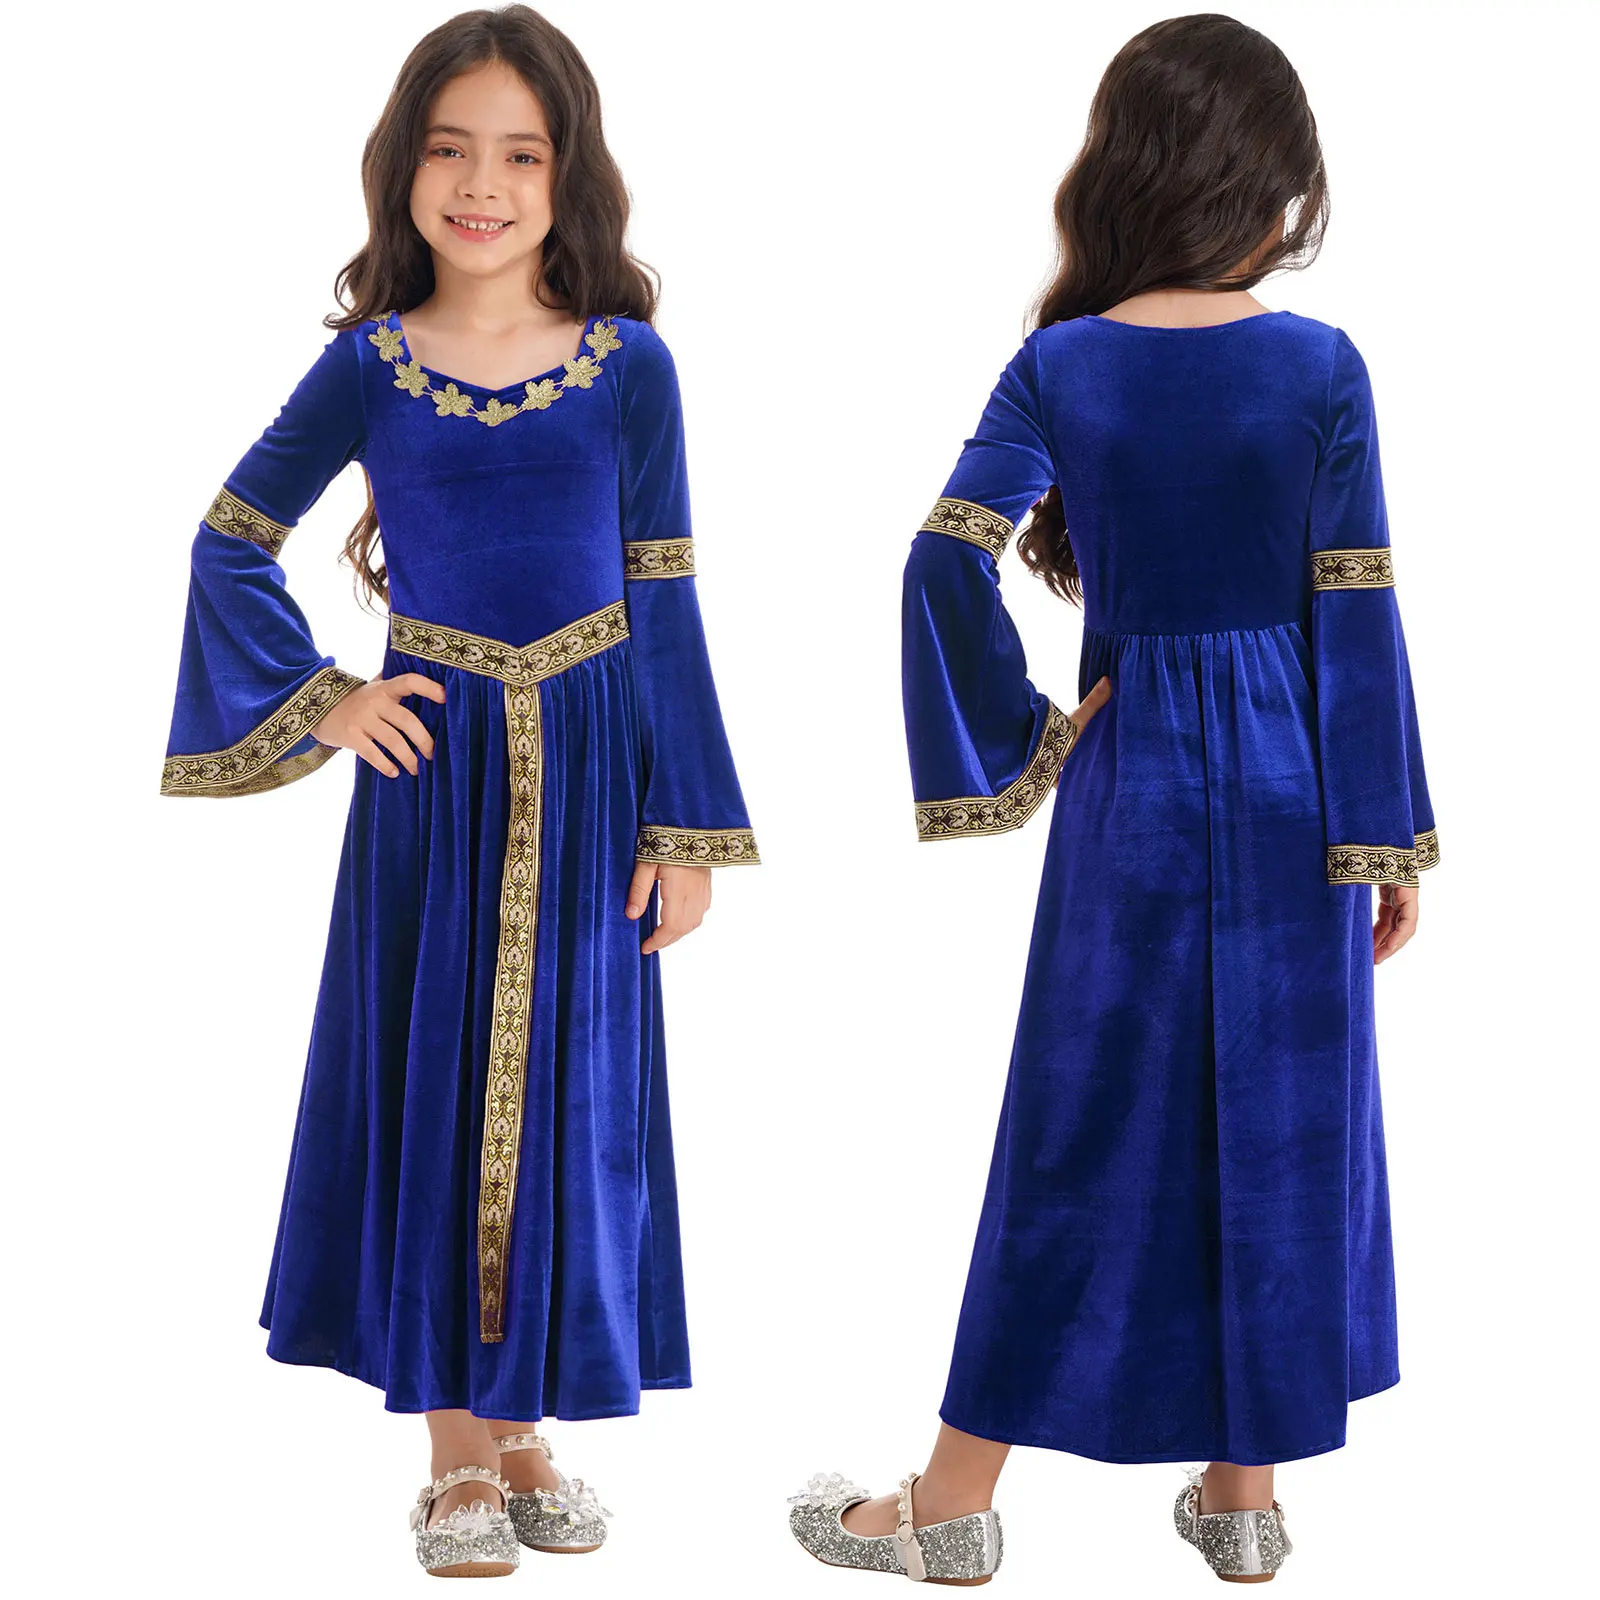 costume de renaissance médiévale pour manches longues évasées en robe vintage de princesse cosplay de fête habillage pour filles